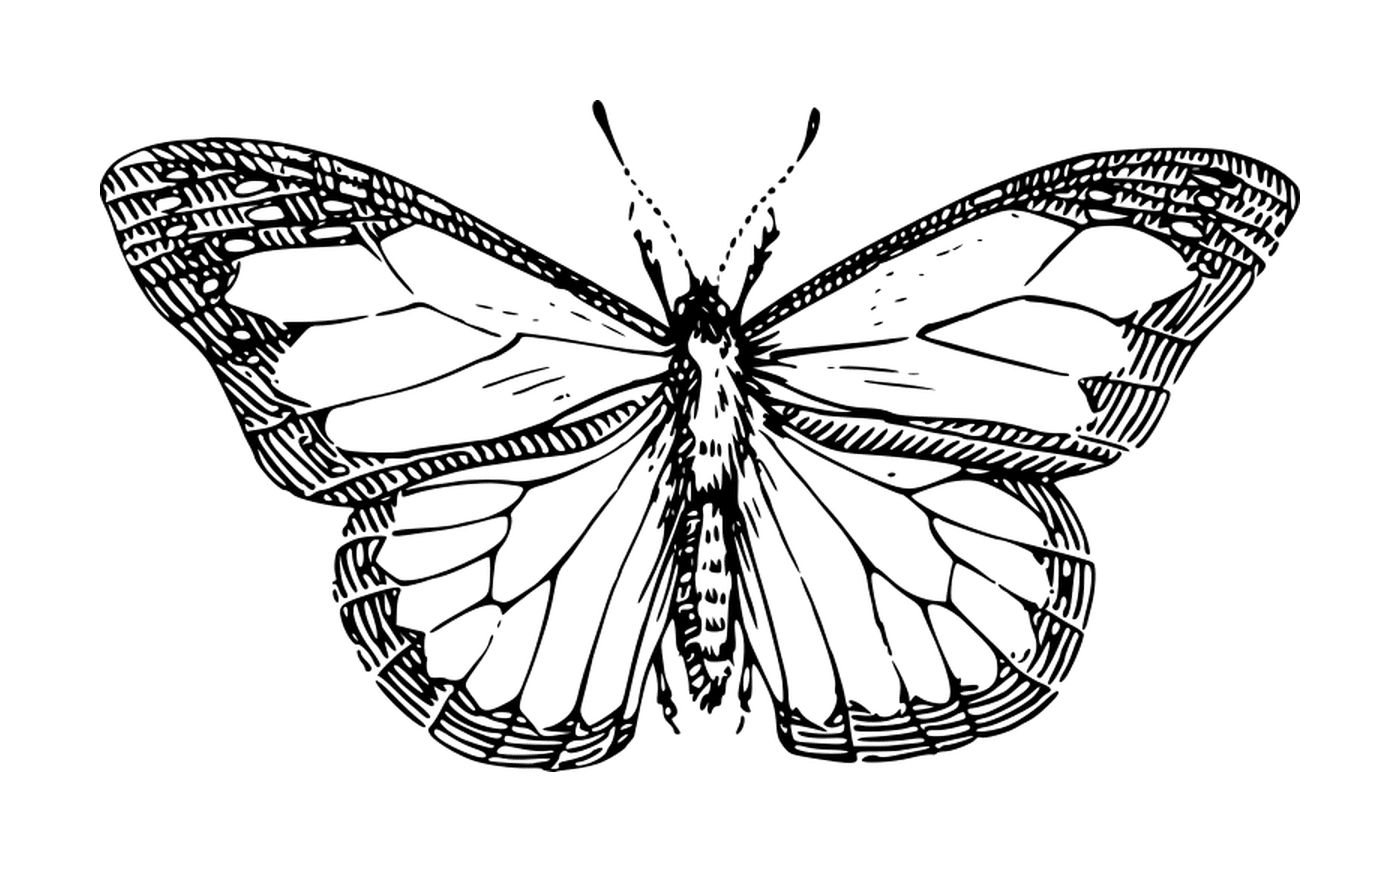  Zarter Schmetterling mit einzigartigen Mustern 